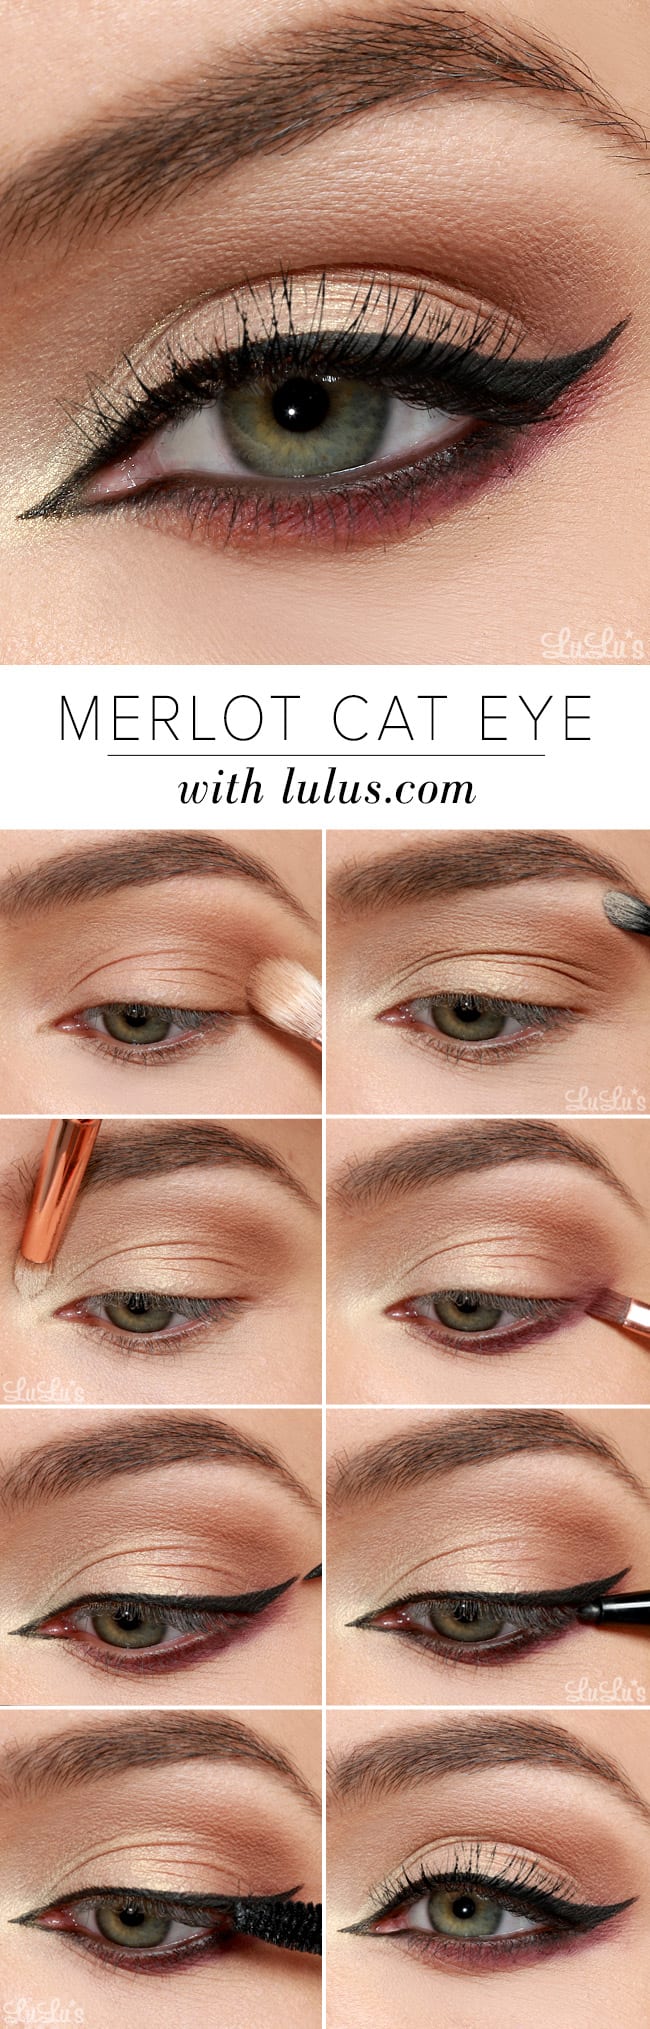 binde detail pålidelighed Lulus How-To: Merlot Cat Eye Makeup Tutorial - Lulus.com Fashion Blog